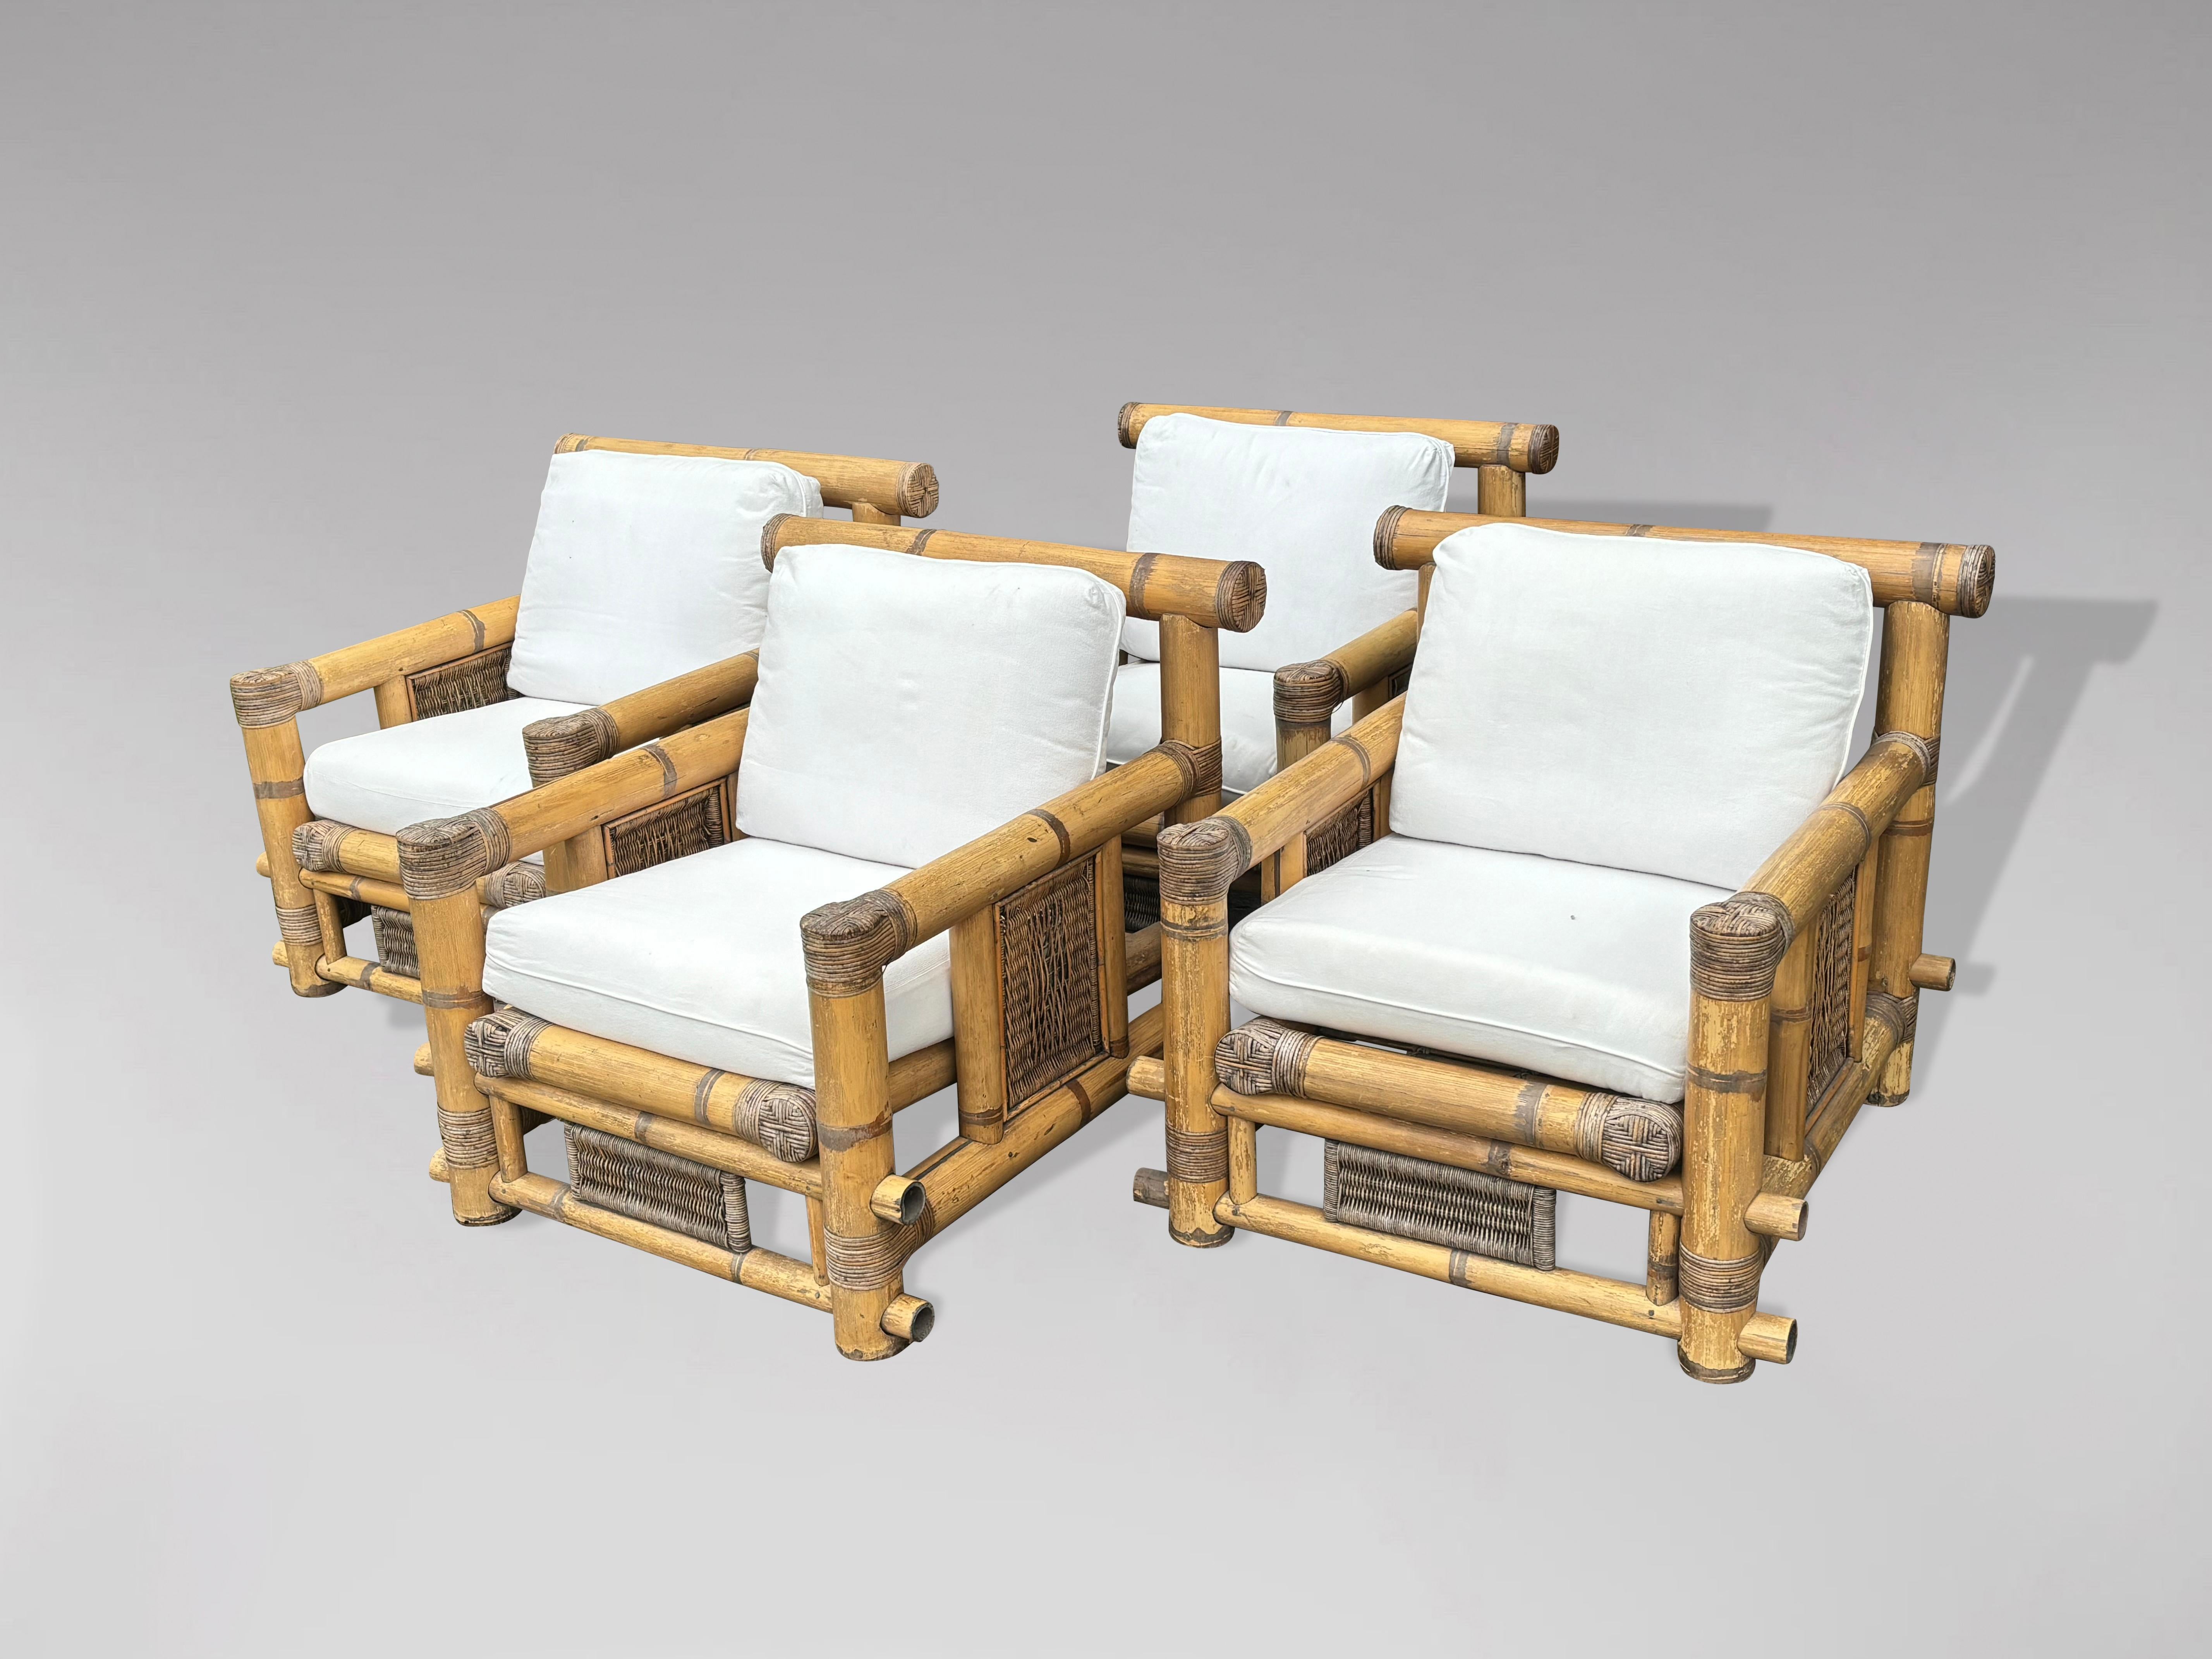 Un ensemble de 4 grands fauteuils côtiers club lounge, conçus par Budji Layug, vers 1980. De très grandes tiges matures de bambou coupé ont été ingénieusement construites pour réaliser un fauteuil de grande taille avec de magnifiques accents